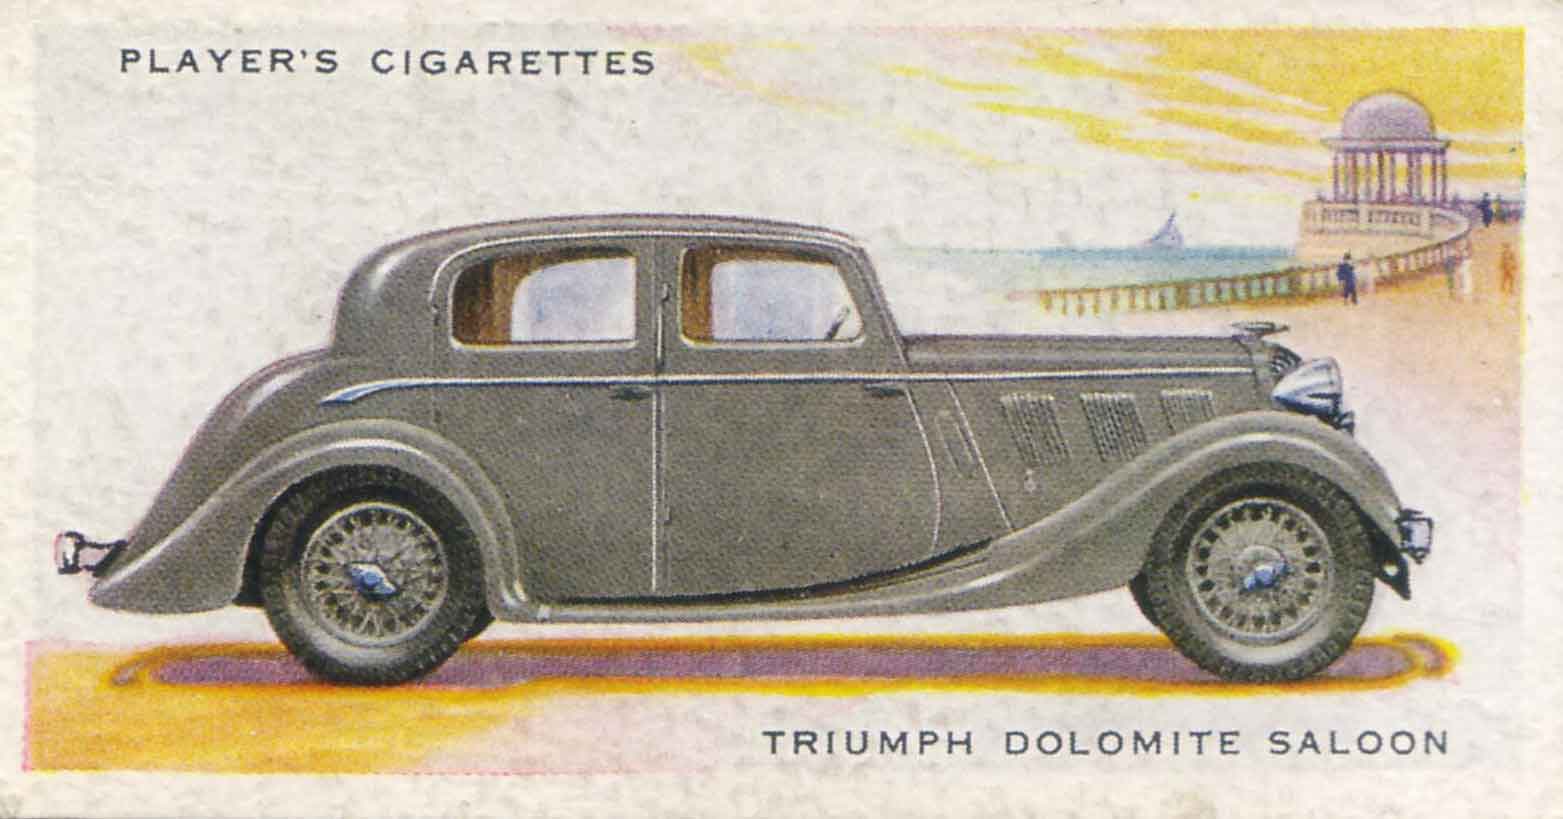 Triumph Dolomite Saloon. 1937 cigarette card.